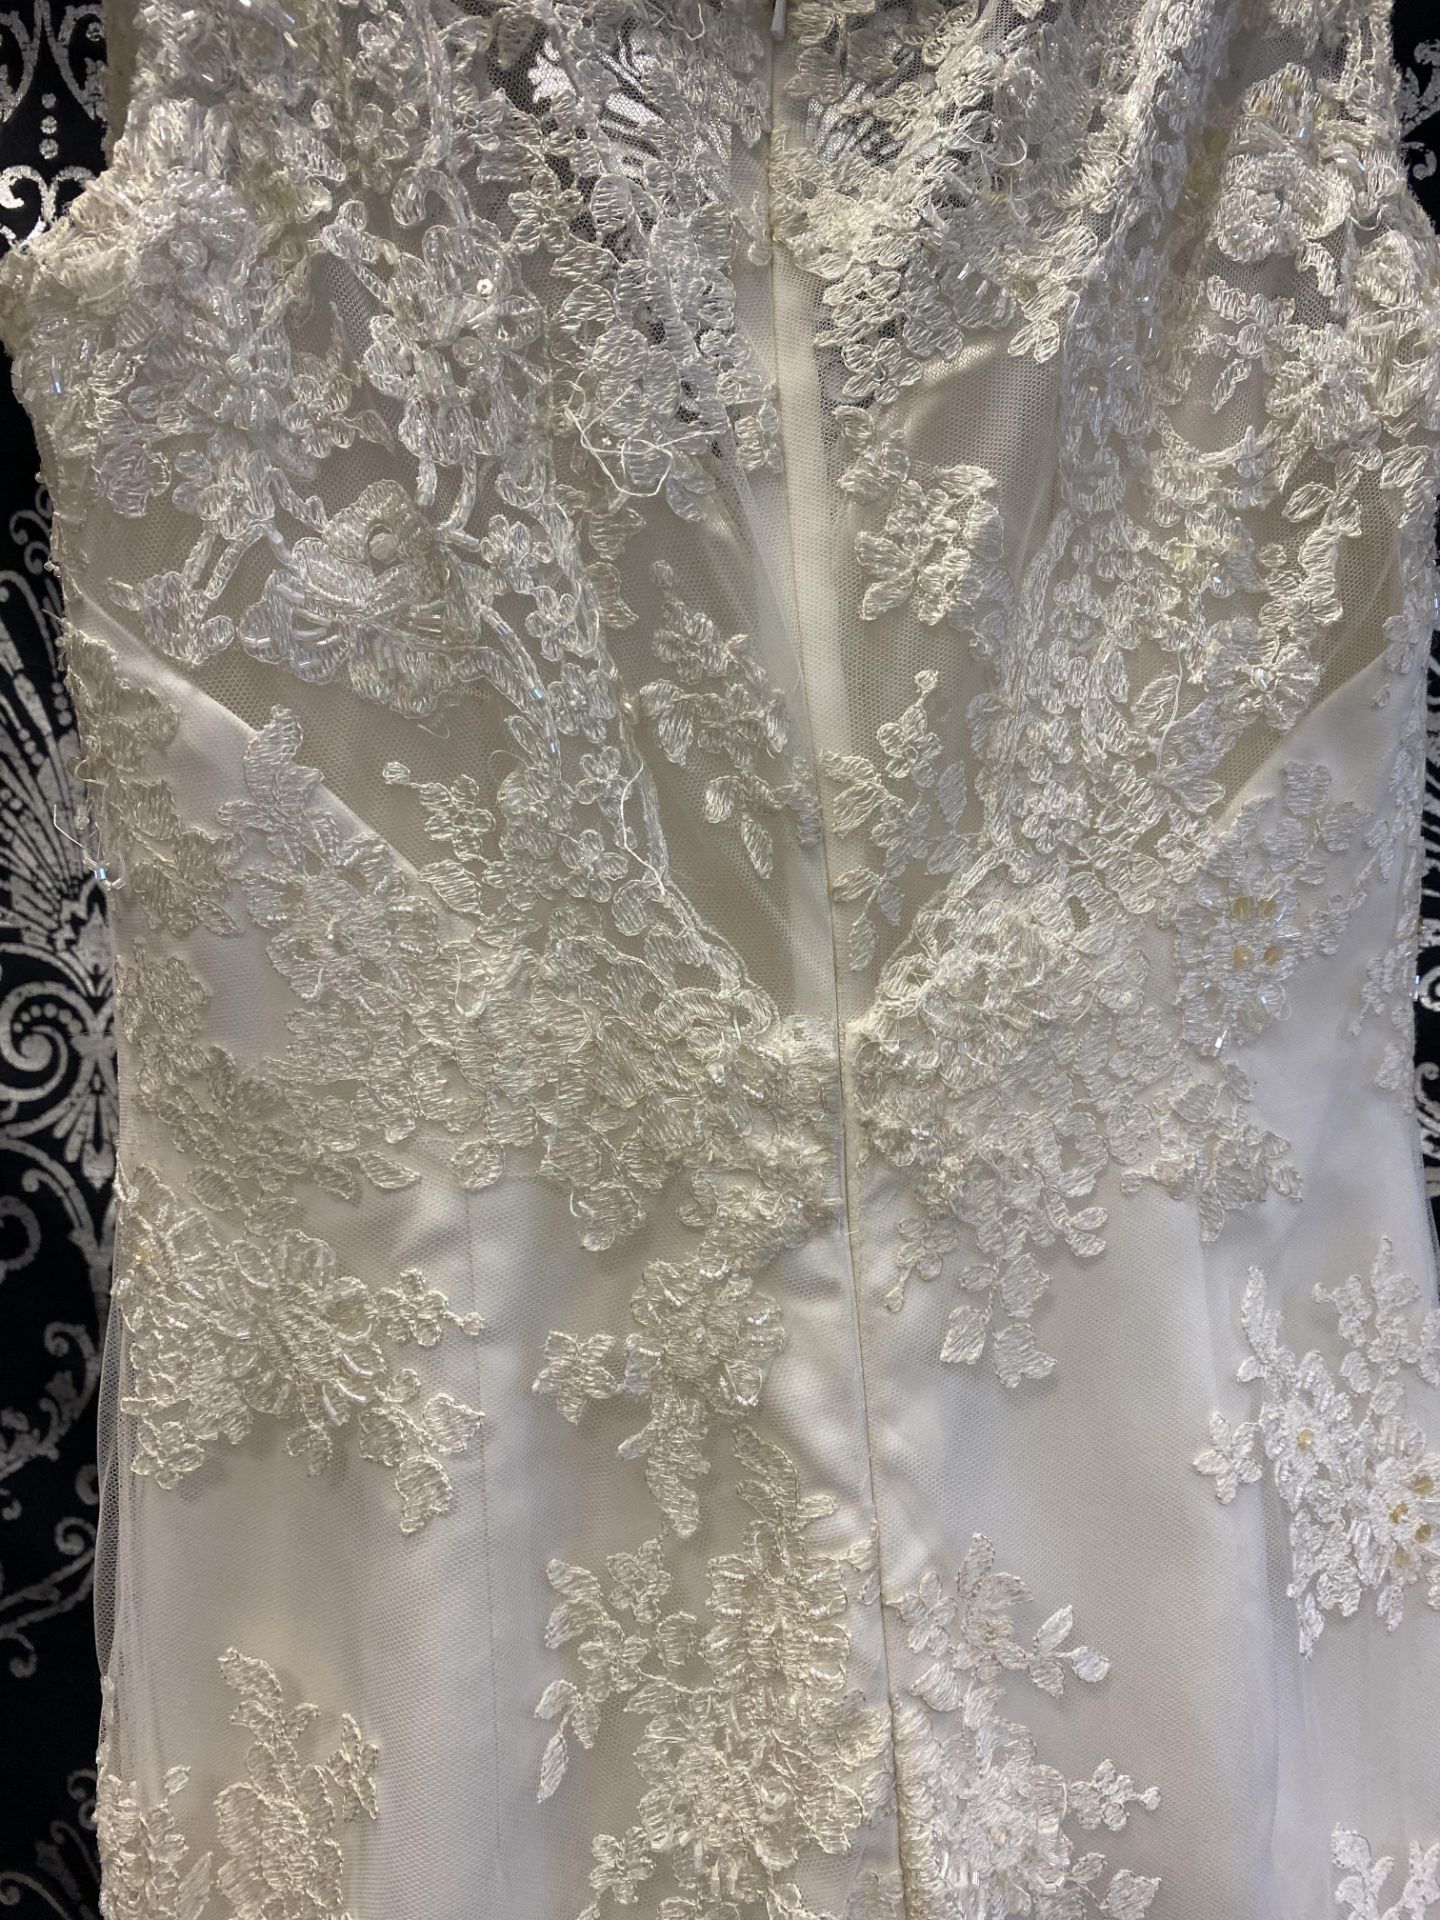 1 x LUSAN MANDONGUS 'Seychelle' Lace Overlay Biased Cut Designer Wedding Dress RRP £1,500 UK10 - Image 8 of 9